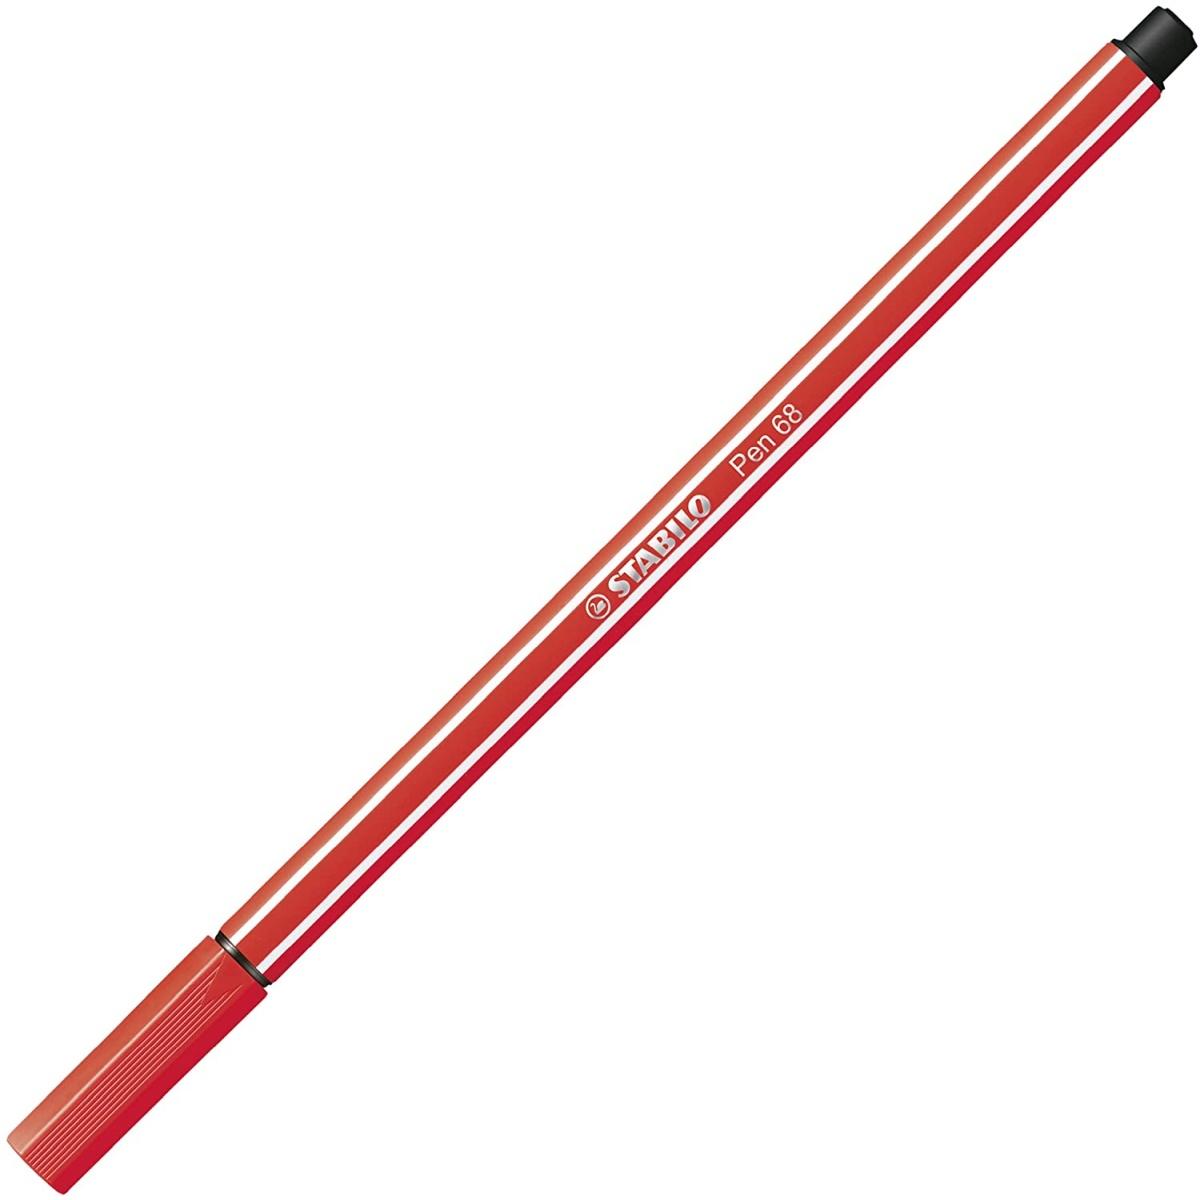 Stabilo pen 68 - rollerset con 25 colori assortiti - arty edition